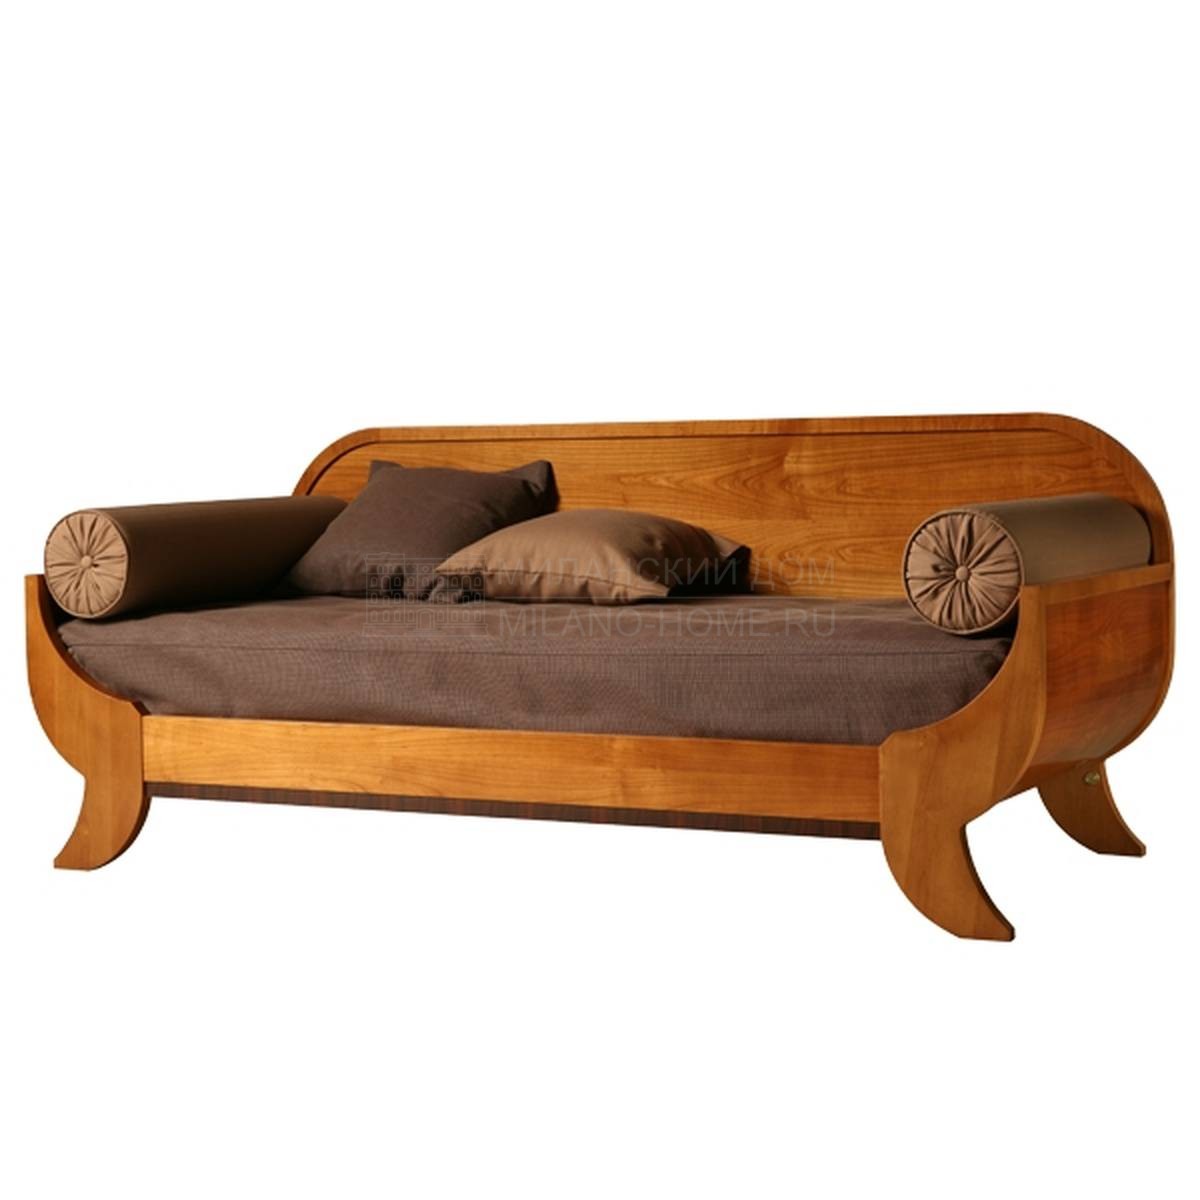 Кровать с деревянным изголовьем Art.2873/Letto Biedermeier из Италии фабрики MORELATO